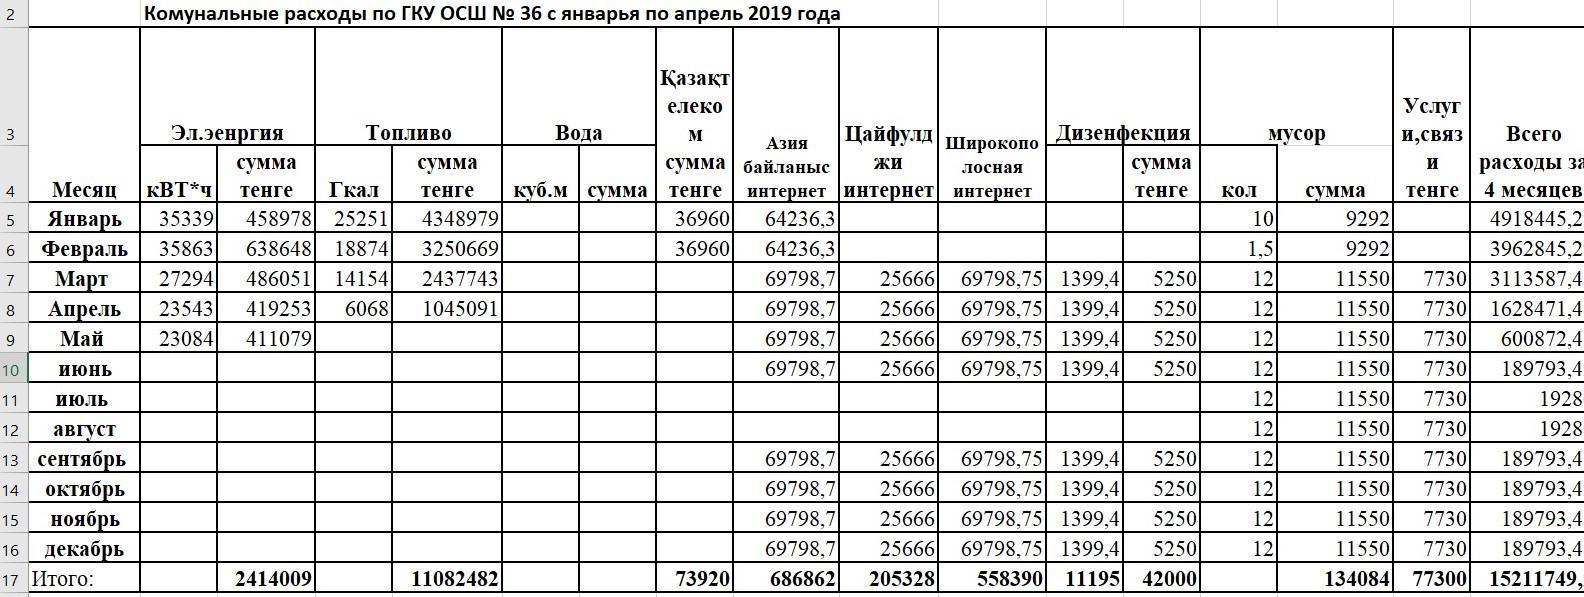 Комунальные расходы по ГКУ ОСШ №36 с январья по апрель 2019 года